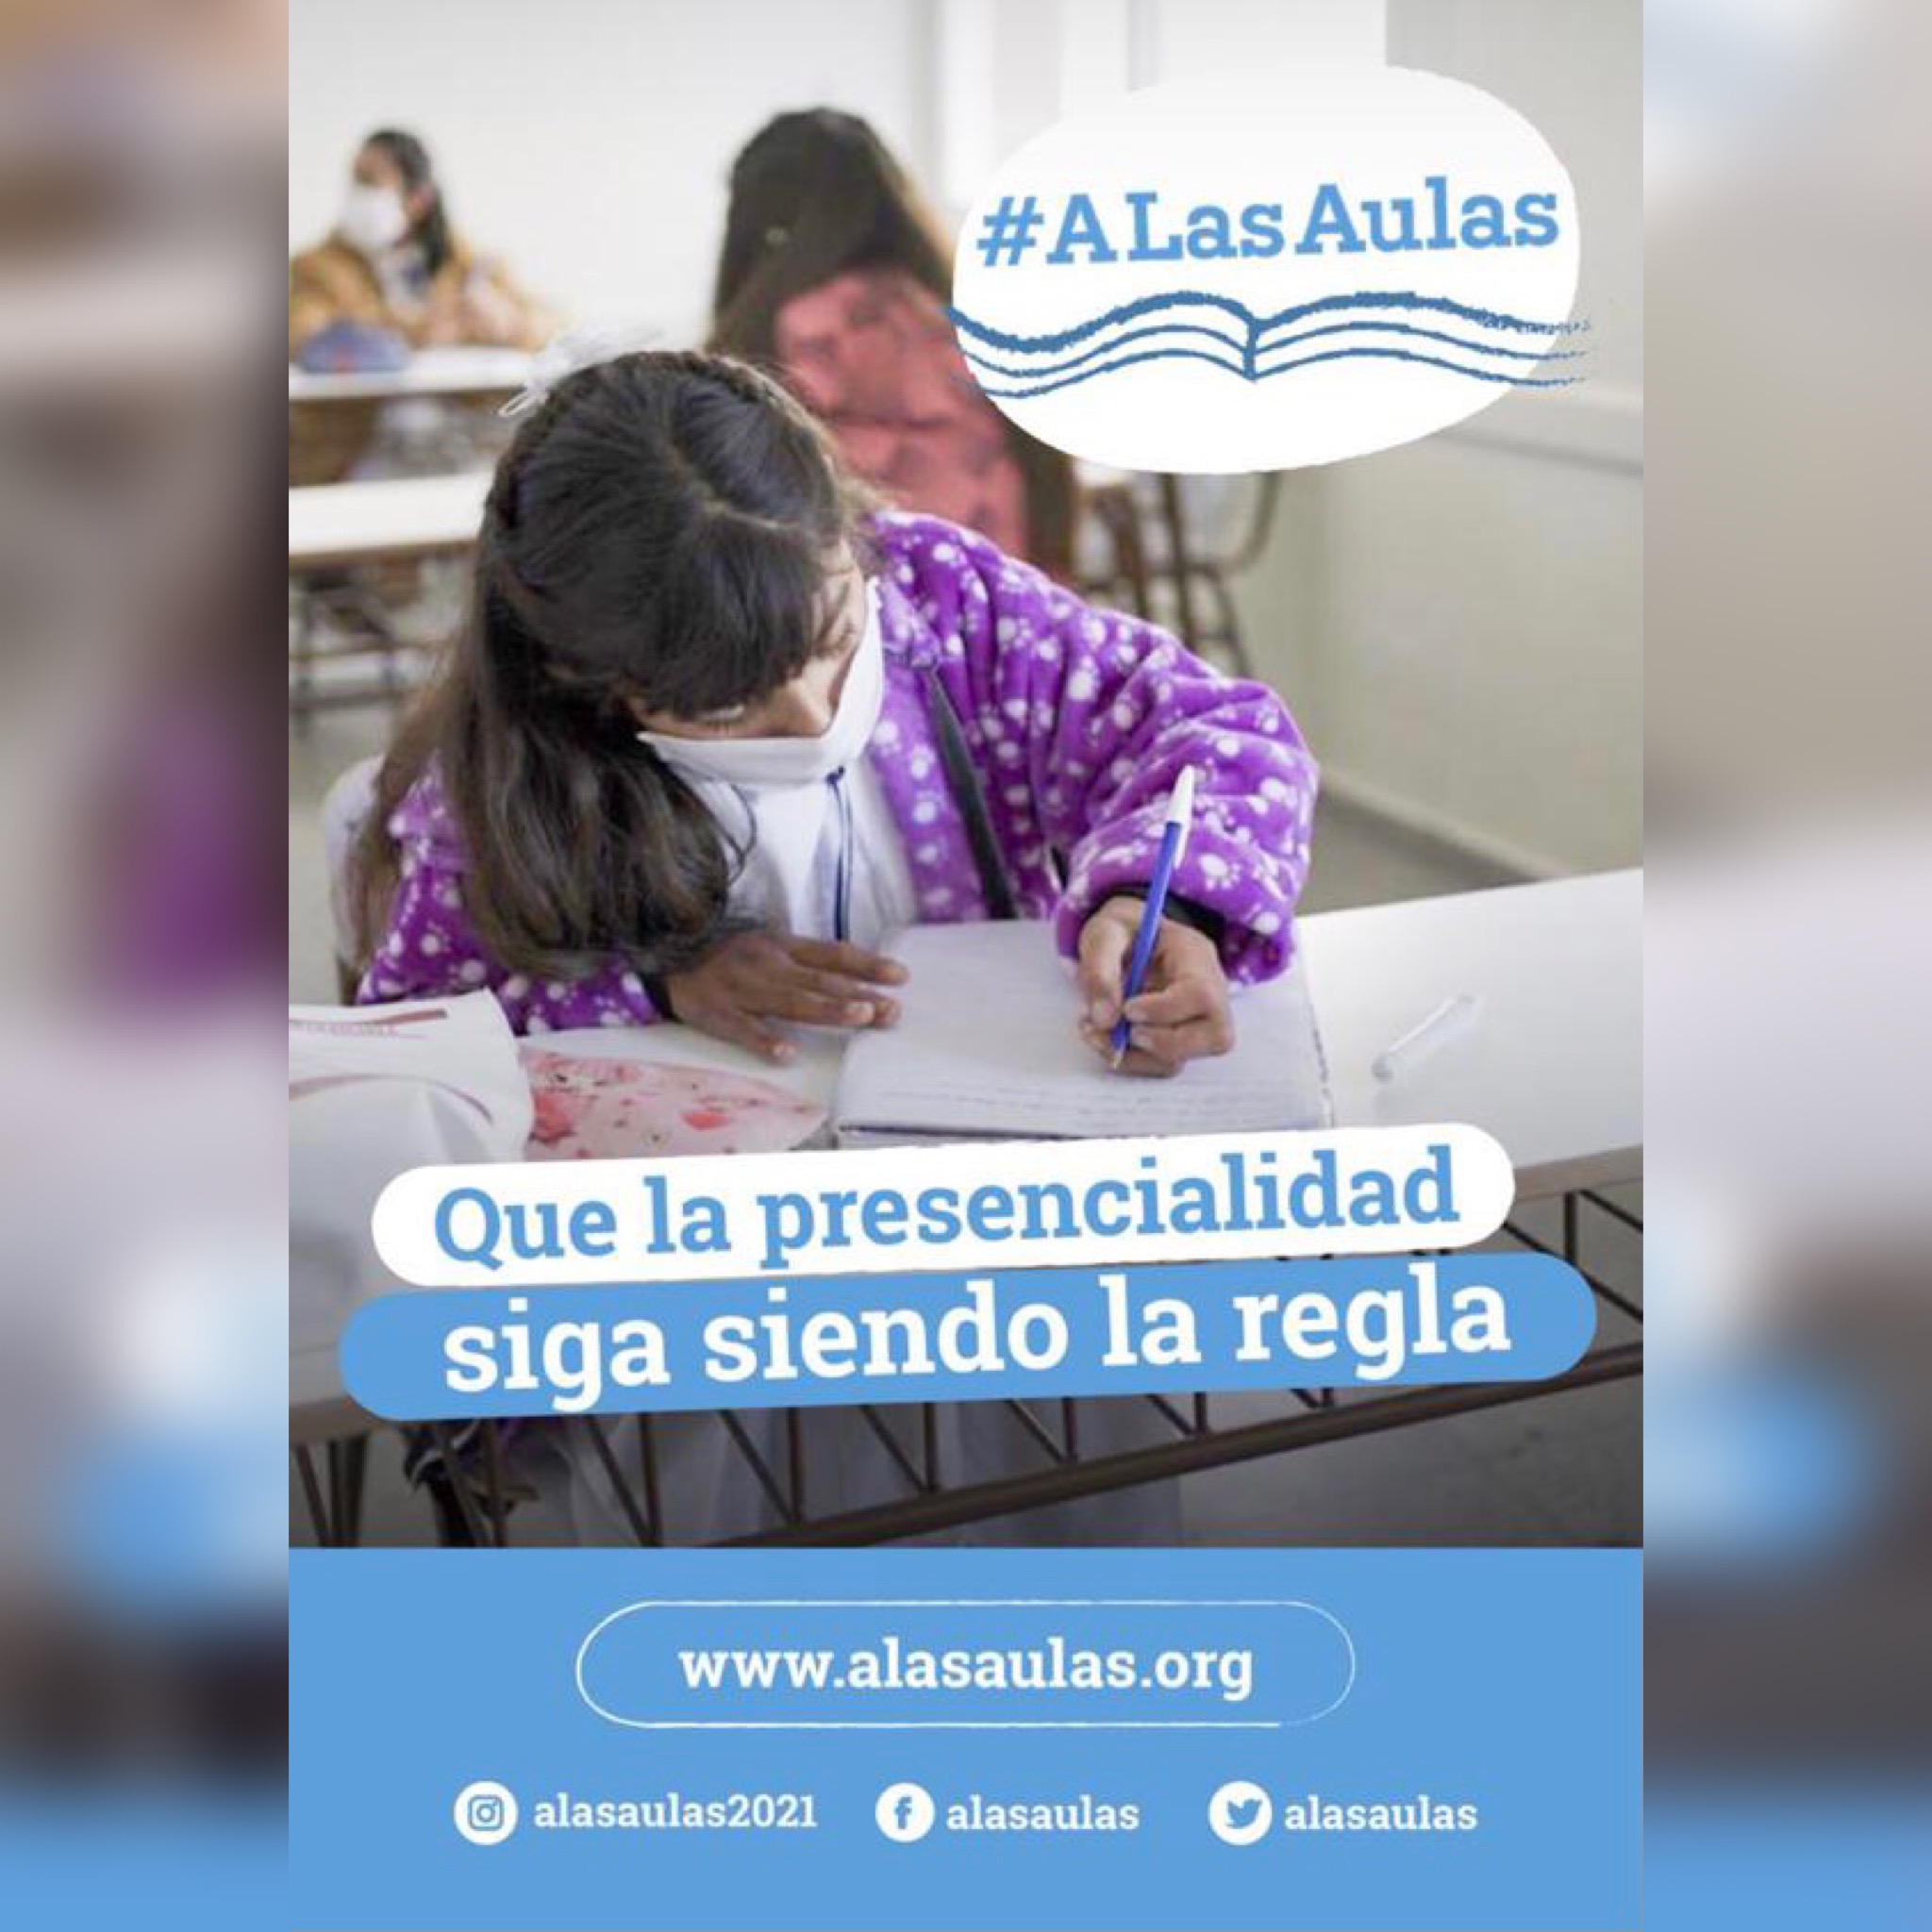 You are currently viewing Suspensión de clases presenciales – Postura y comunidad educativa – Campaña “A Las Aulas”